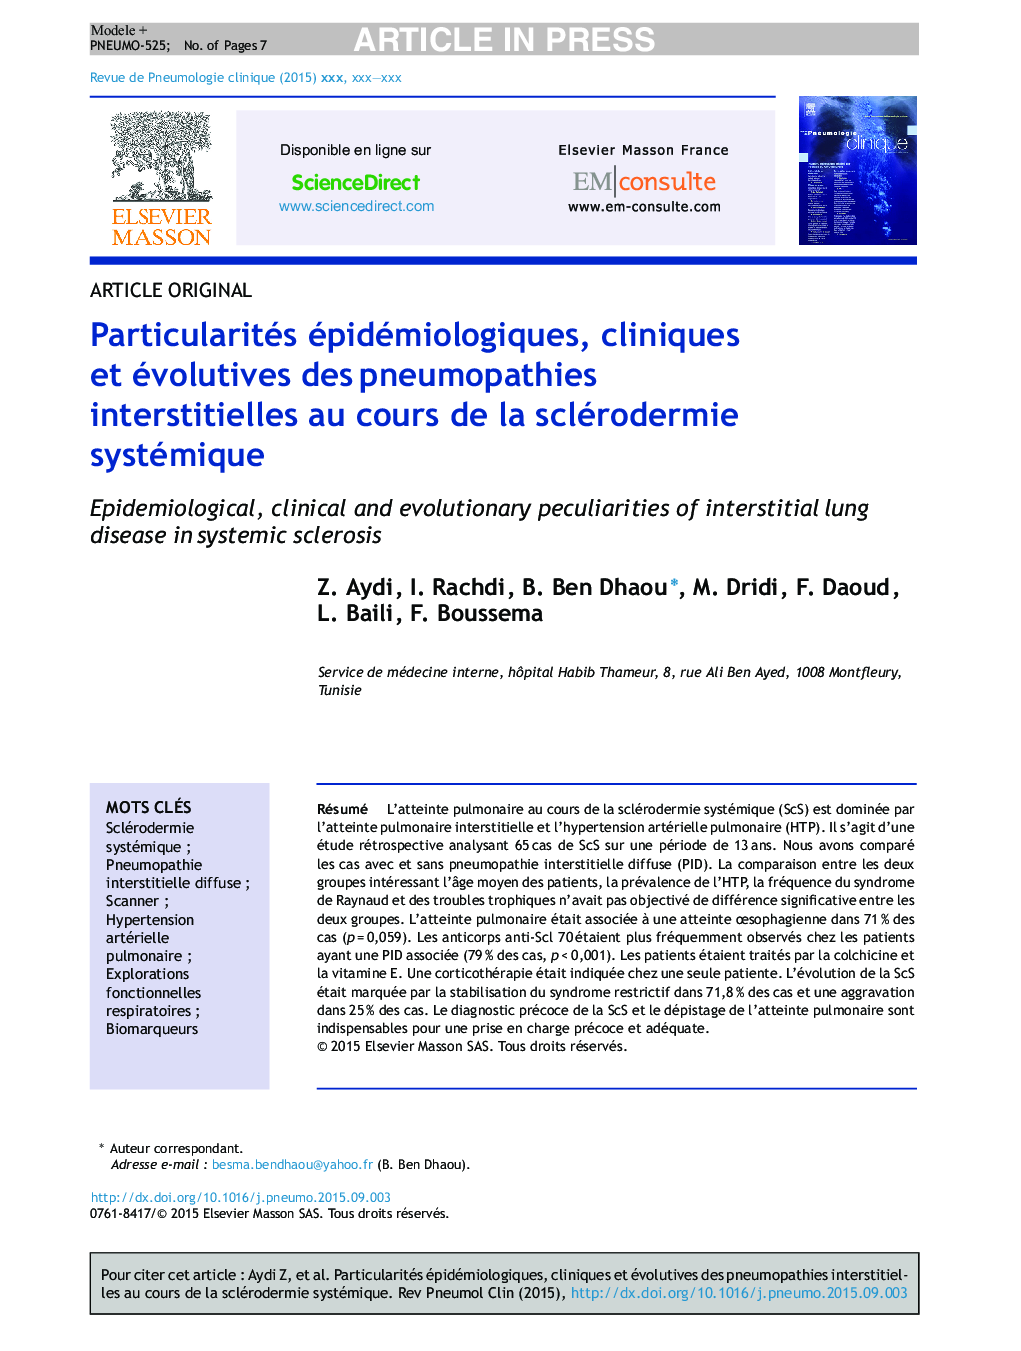 Particularités épidémiologiques, cliniques et évolutives desÂ pneumopathies interstitielles au cours de la sclérodermie systémique